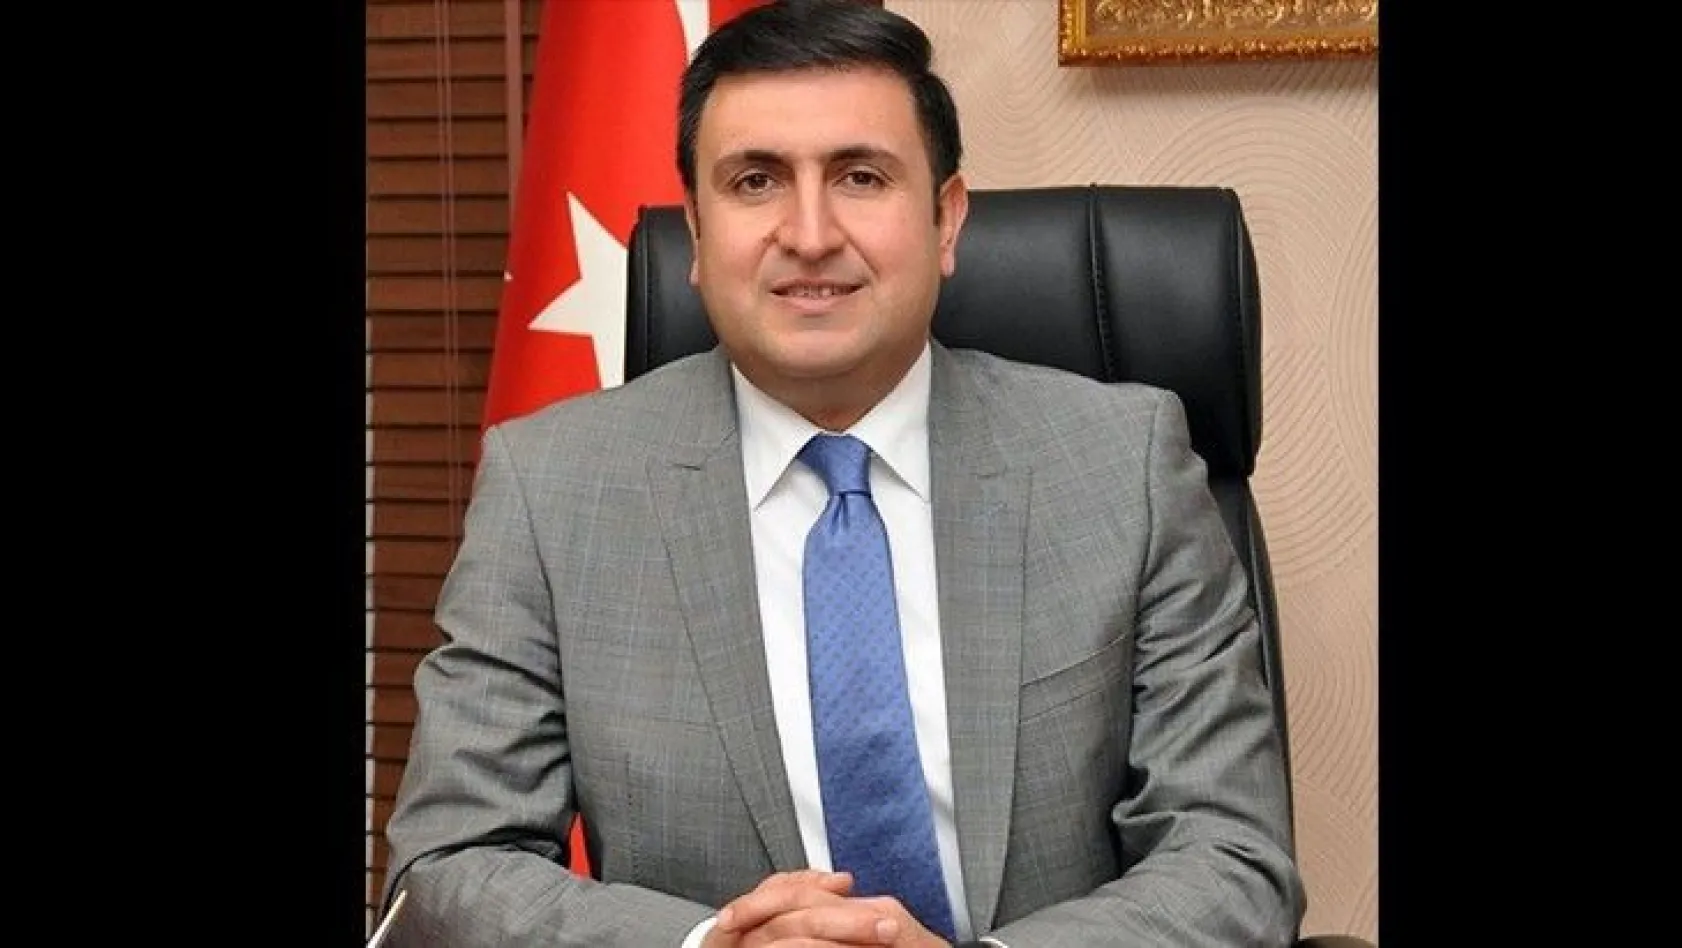 Hemşehrimiz Yentür, İzmir Milli Eğitim Müdürü görevine atandı